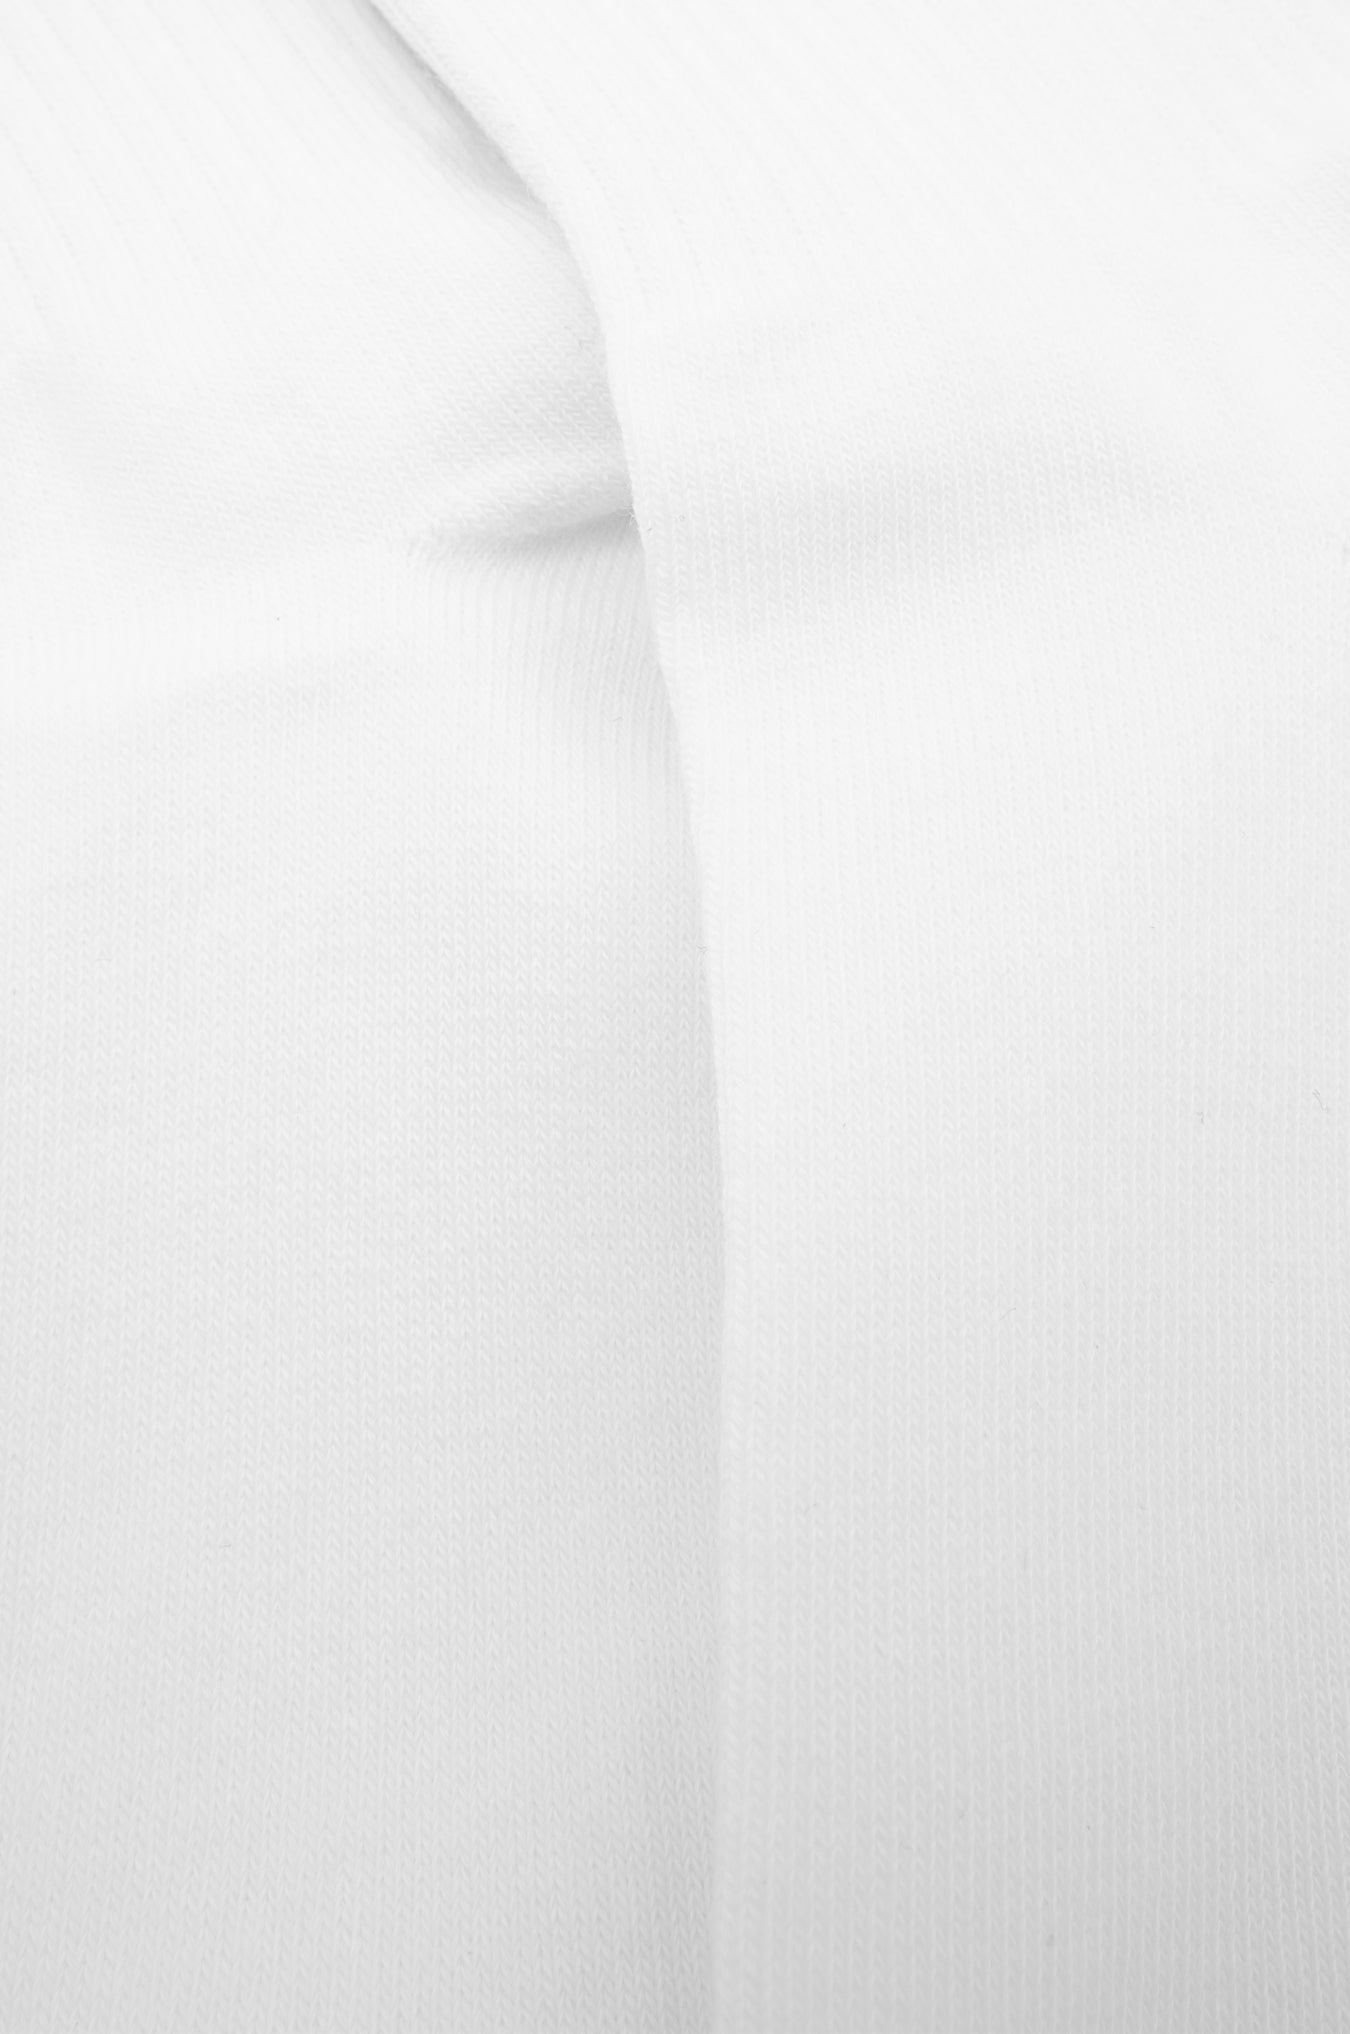 SKOOP® Basiks Banner Dress Socks White - SKOOP Kommunity